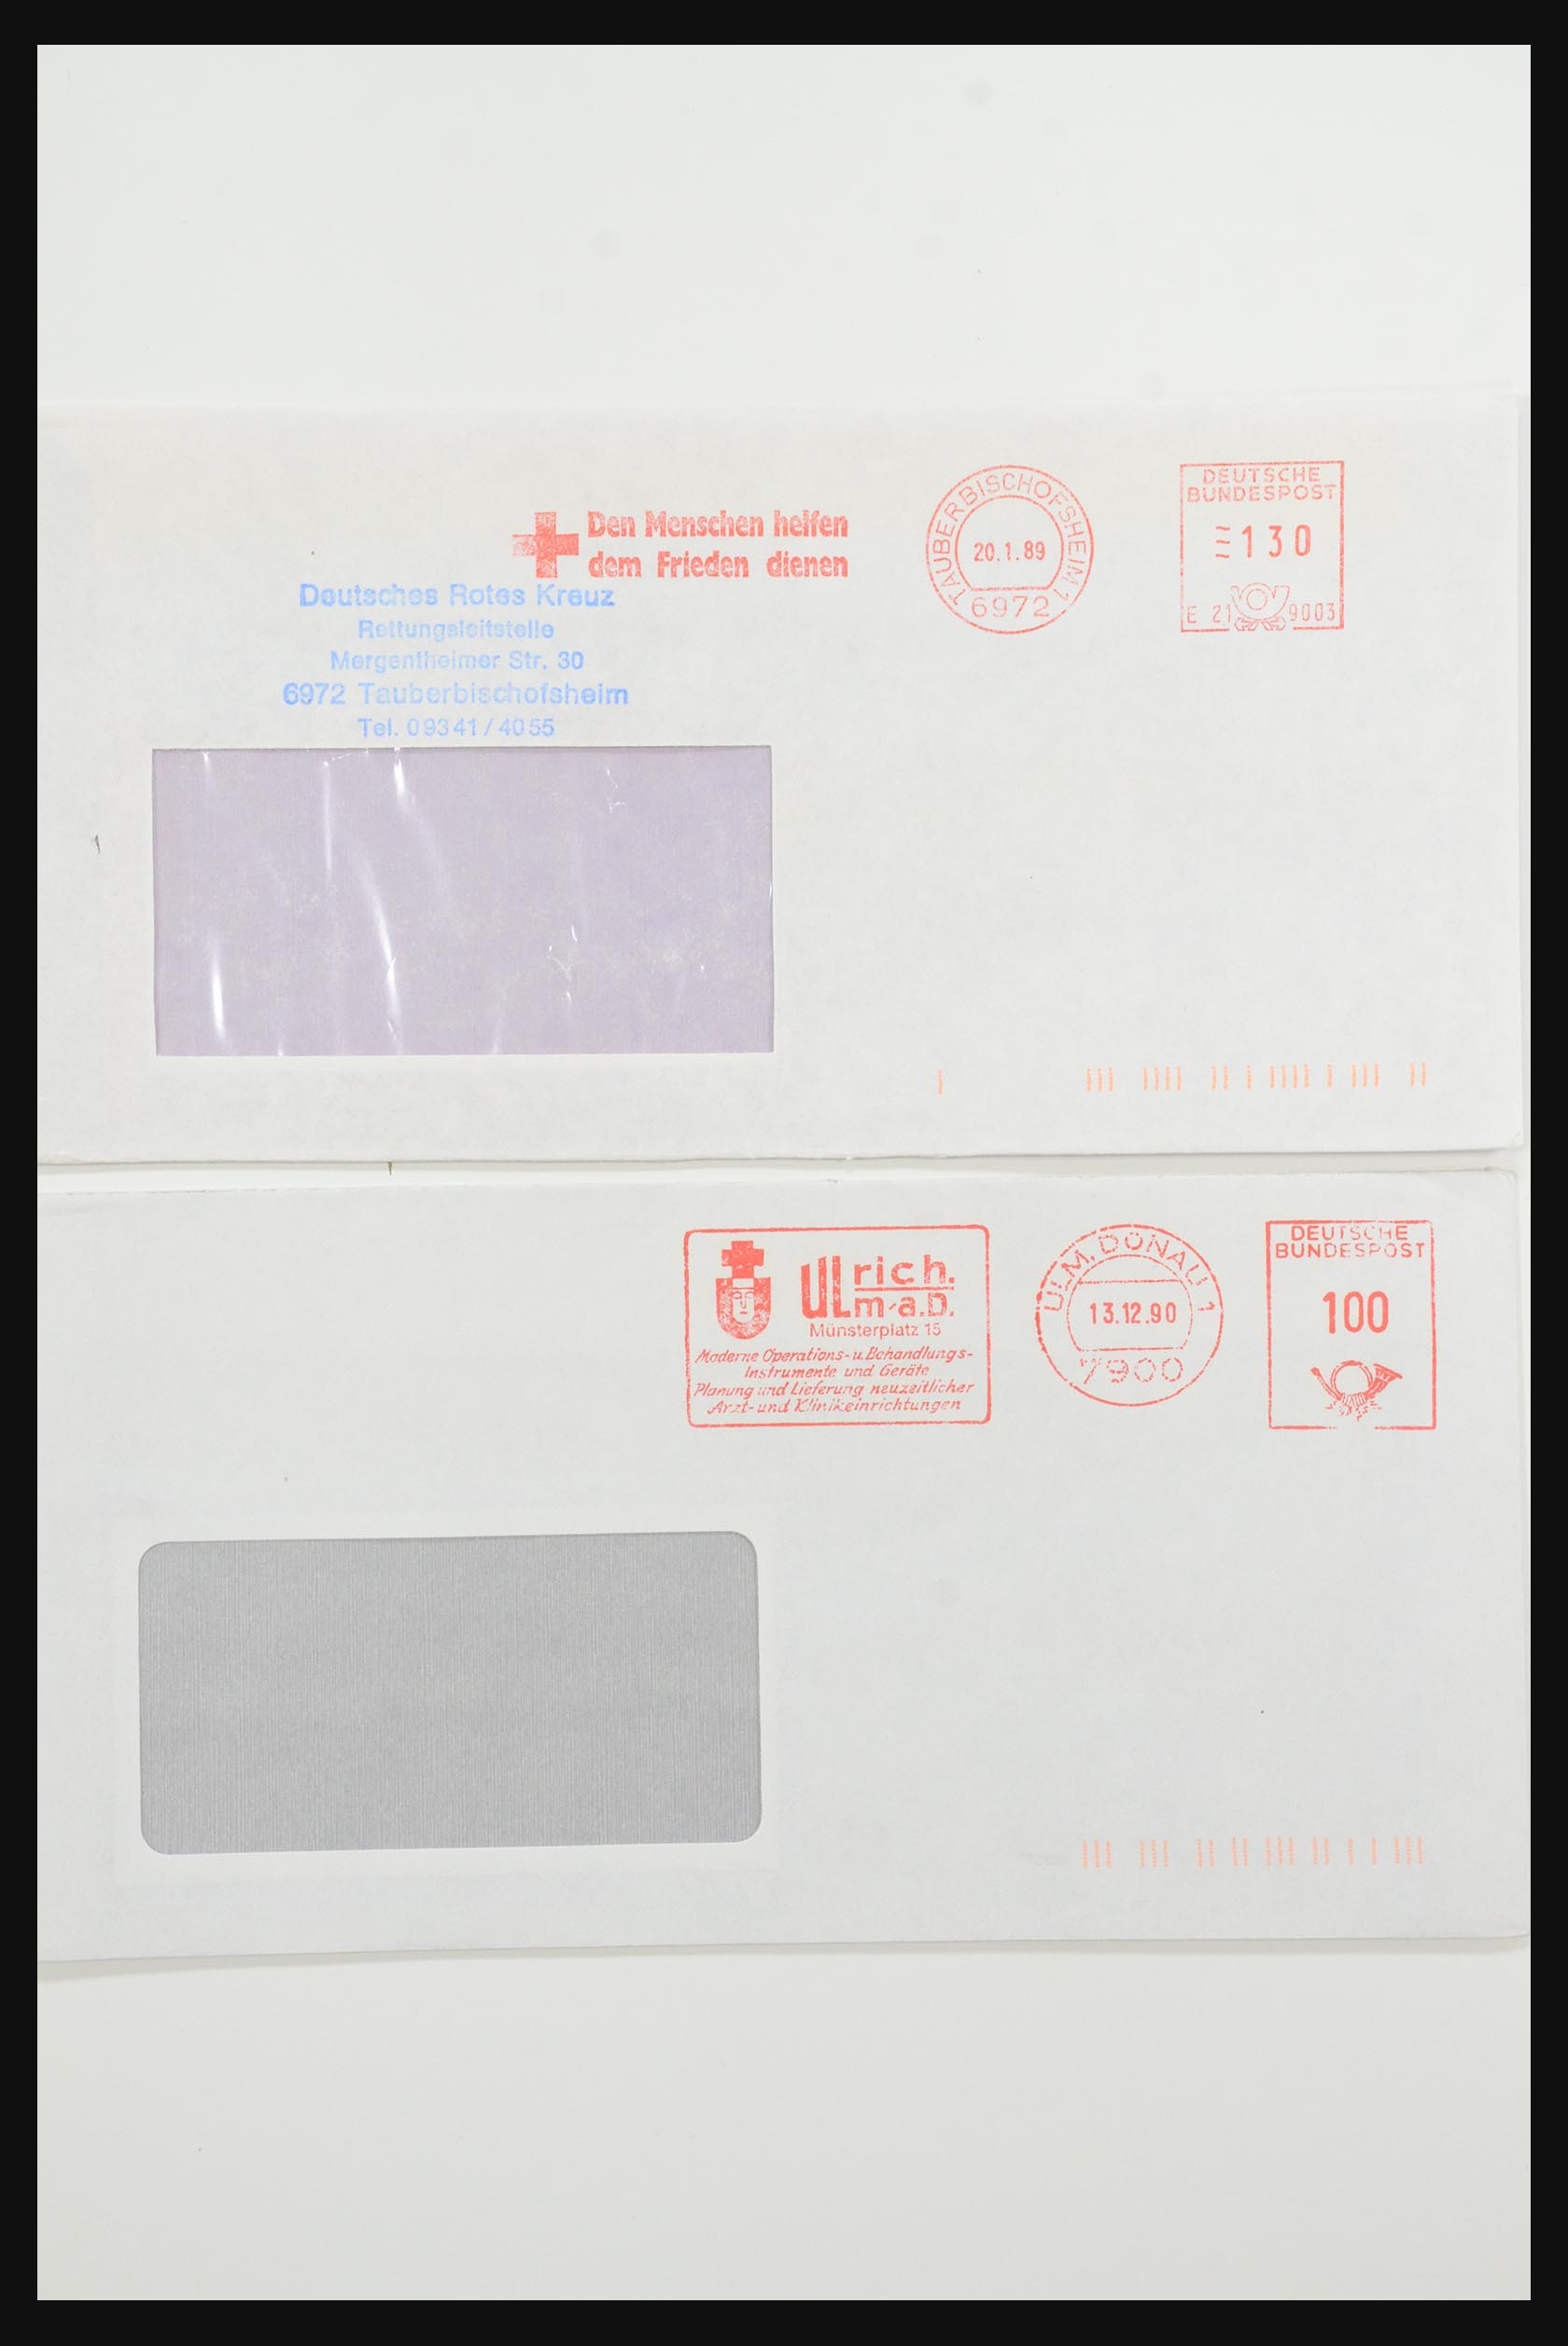 31365 1054 - 31365 Rode kruis brieven 1905-1975.